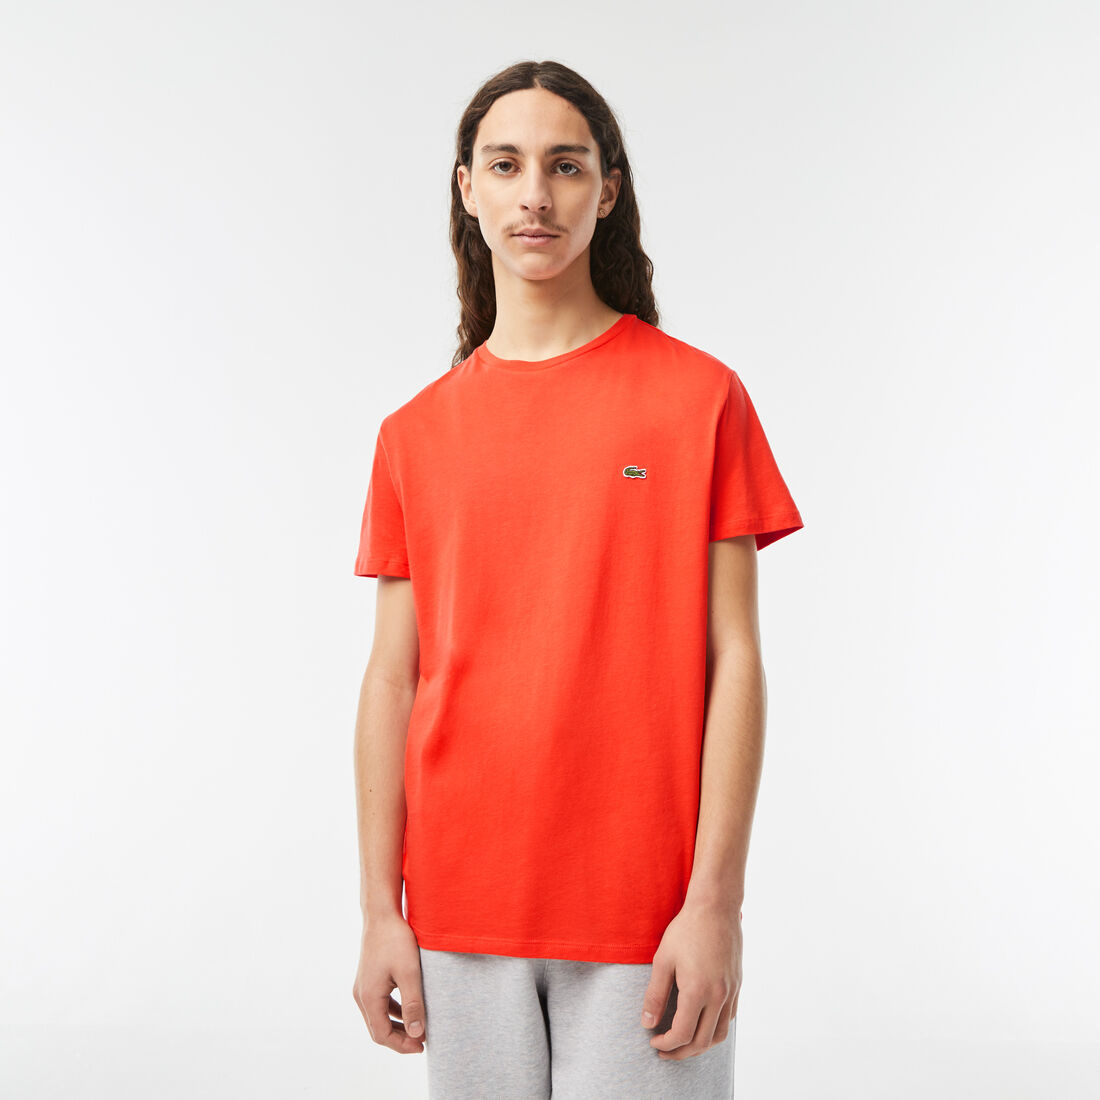 Lacoste Crew Neck Pima Baumwoll Jersey T-shirts Herren Orange | WZJM-79605